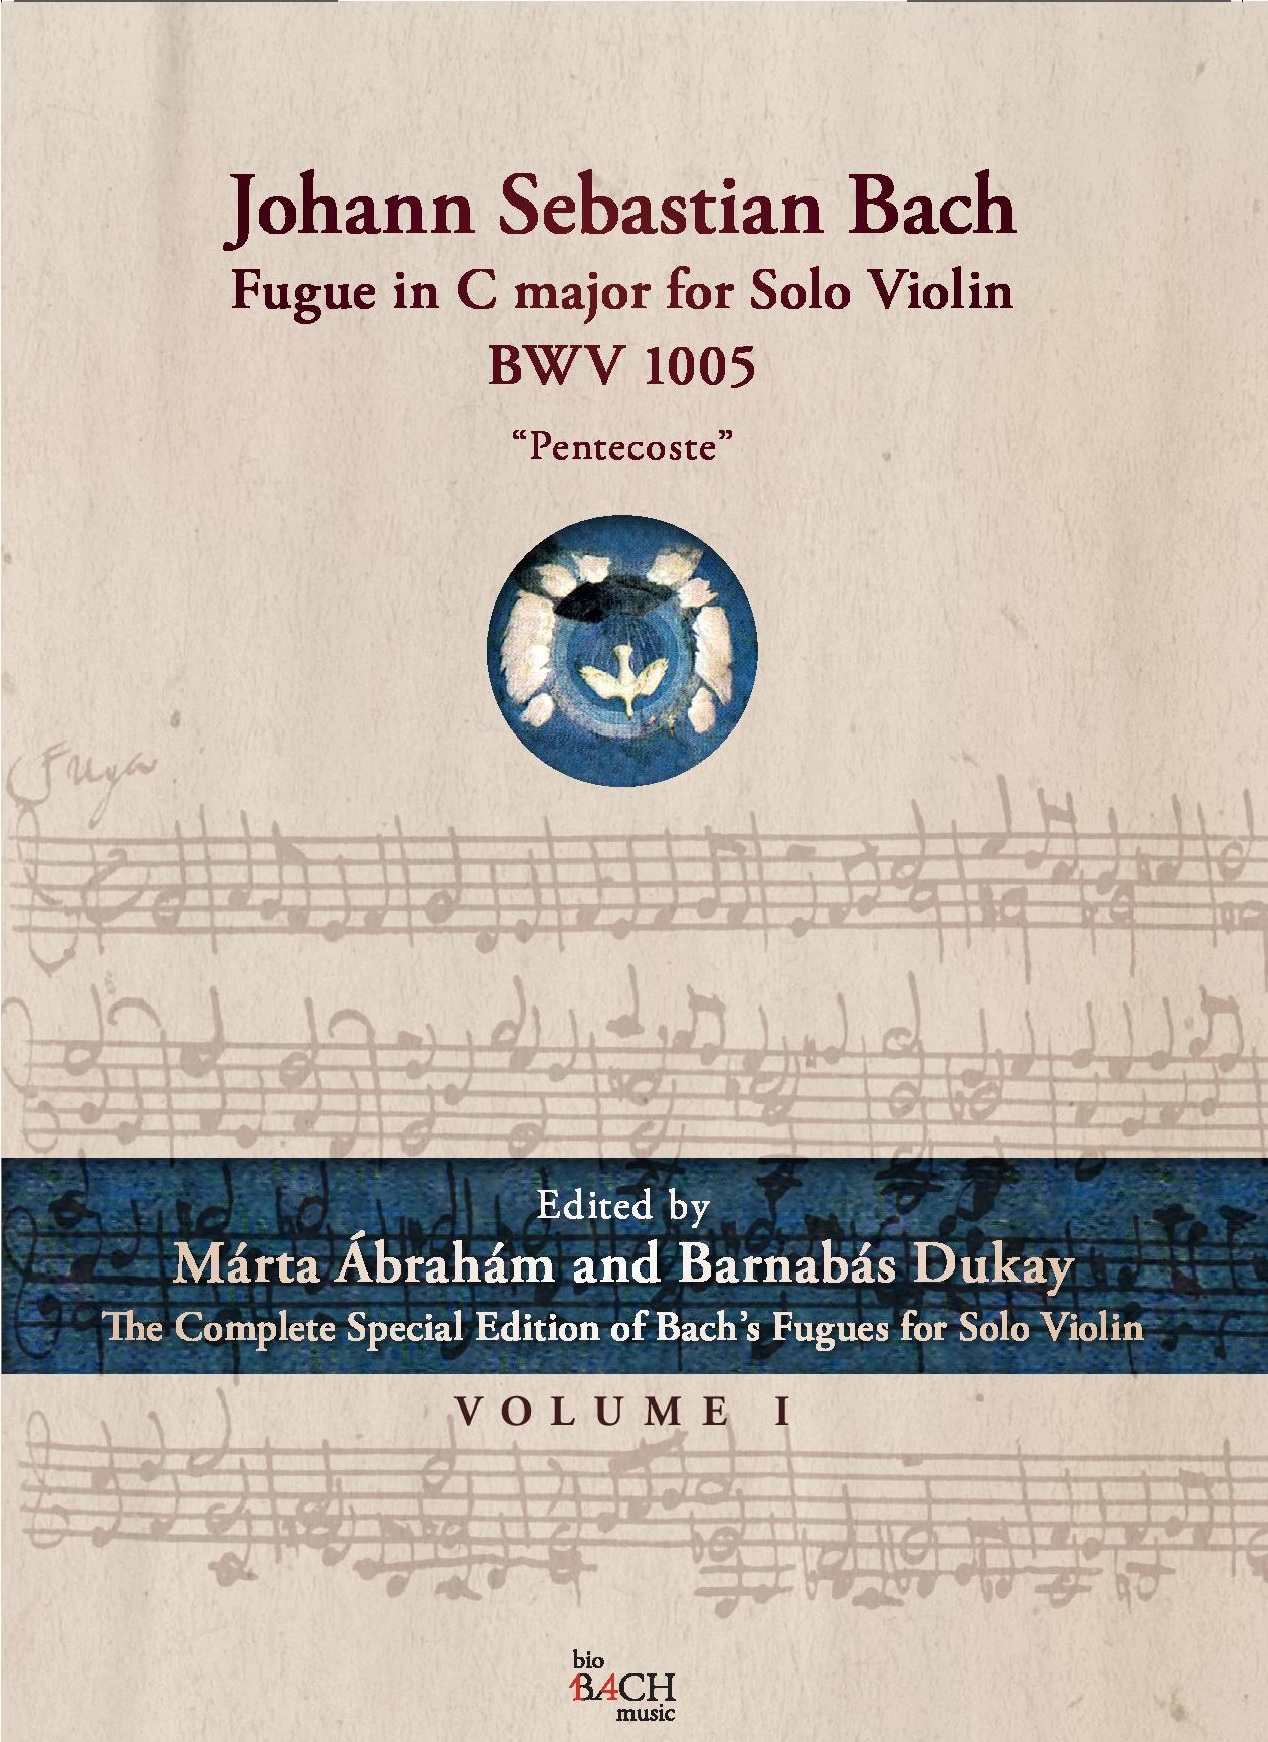 J. S. Bach - FUGUE IN C MAJOR FOR SOLO VIOLIN BWV 1005 "PENTECOSTE"  VOL.1 - ÁBRAHÁM MÁRTA, DUKAY BARNABÁS